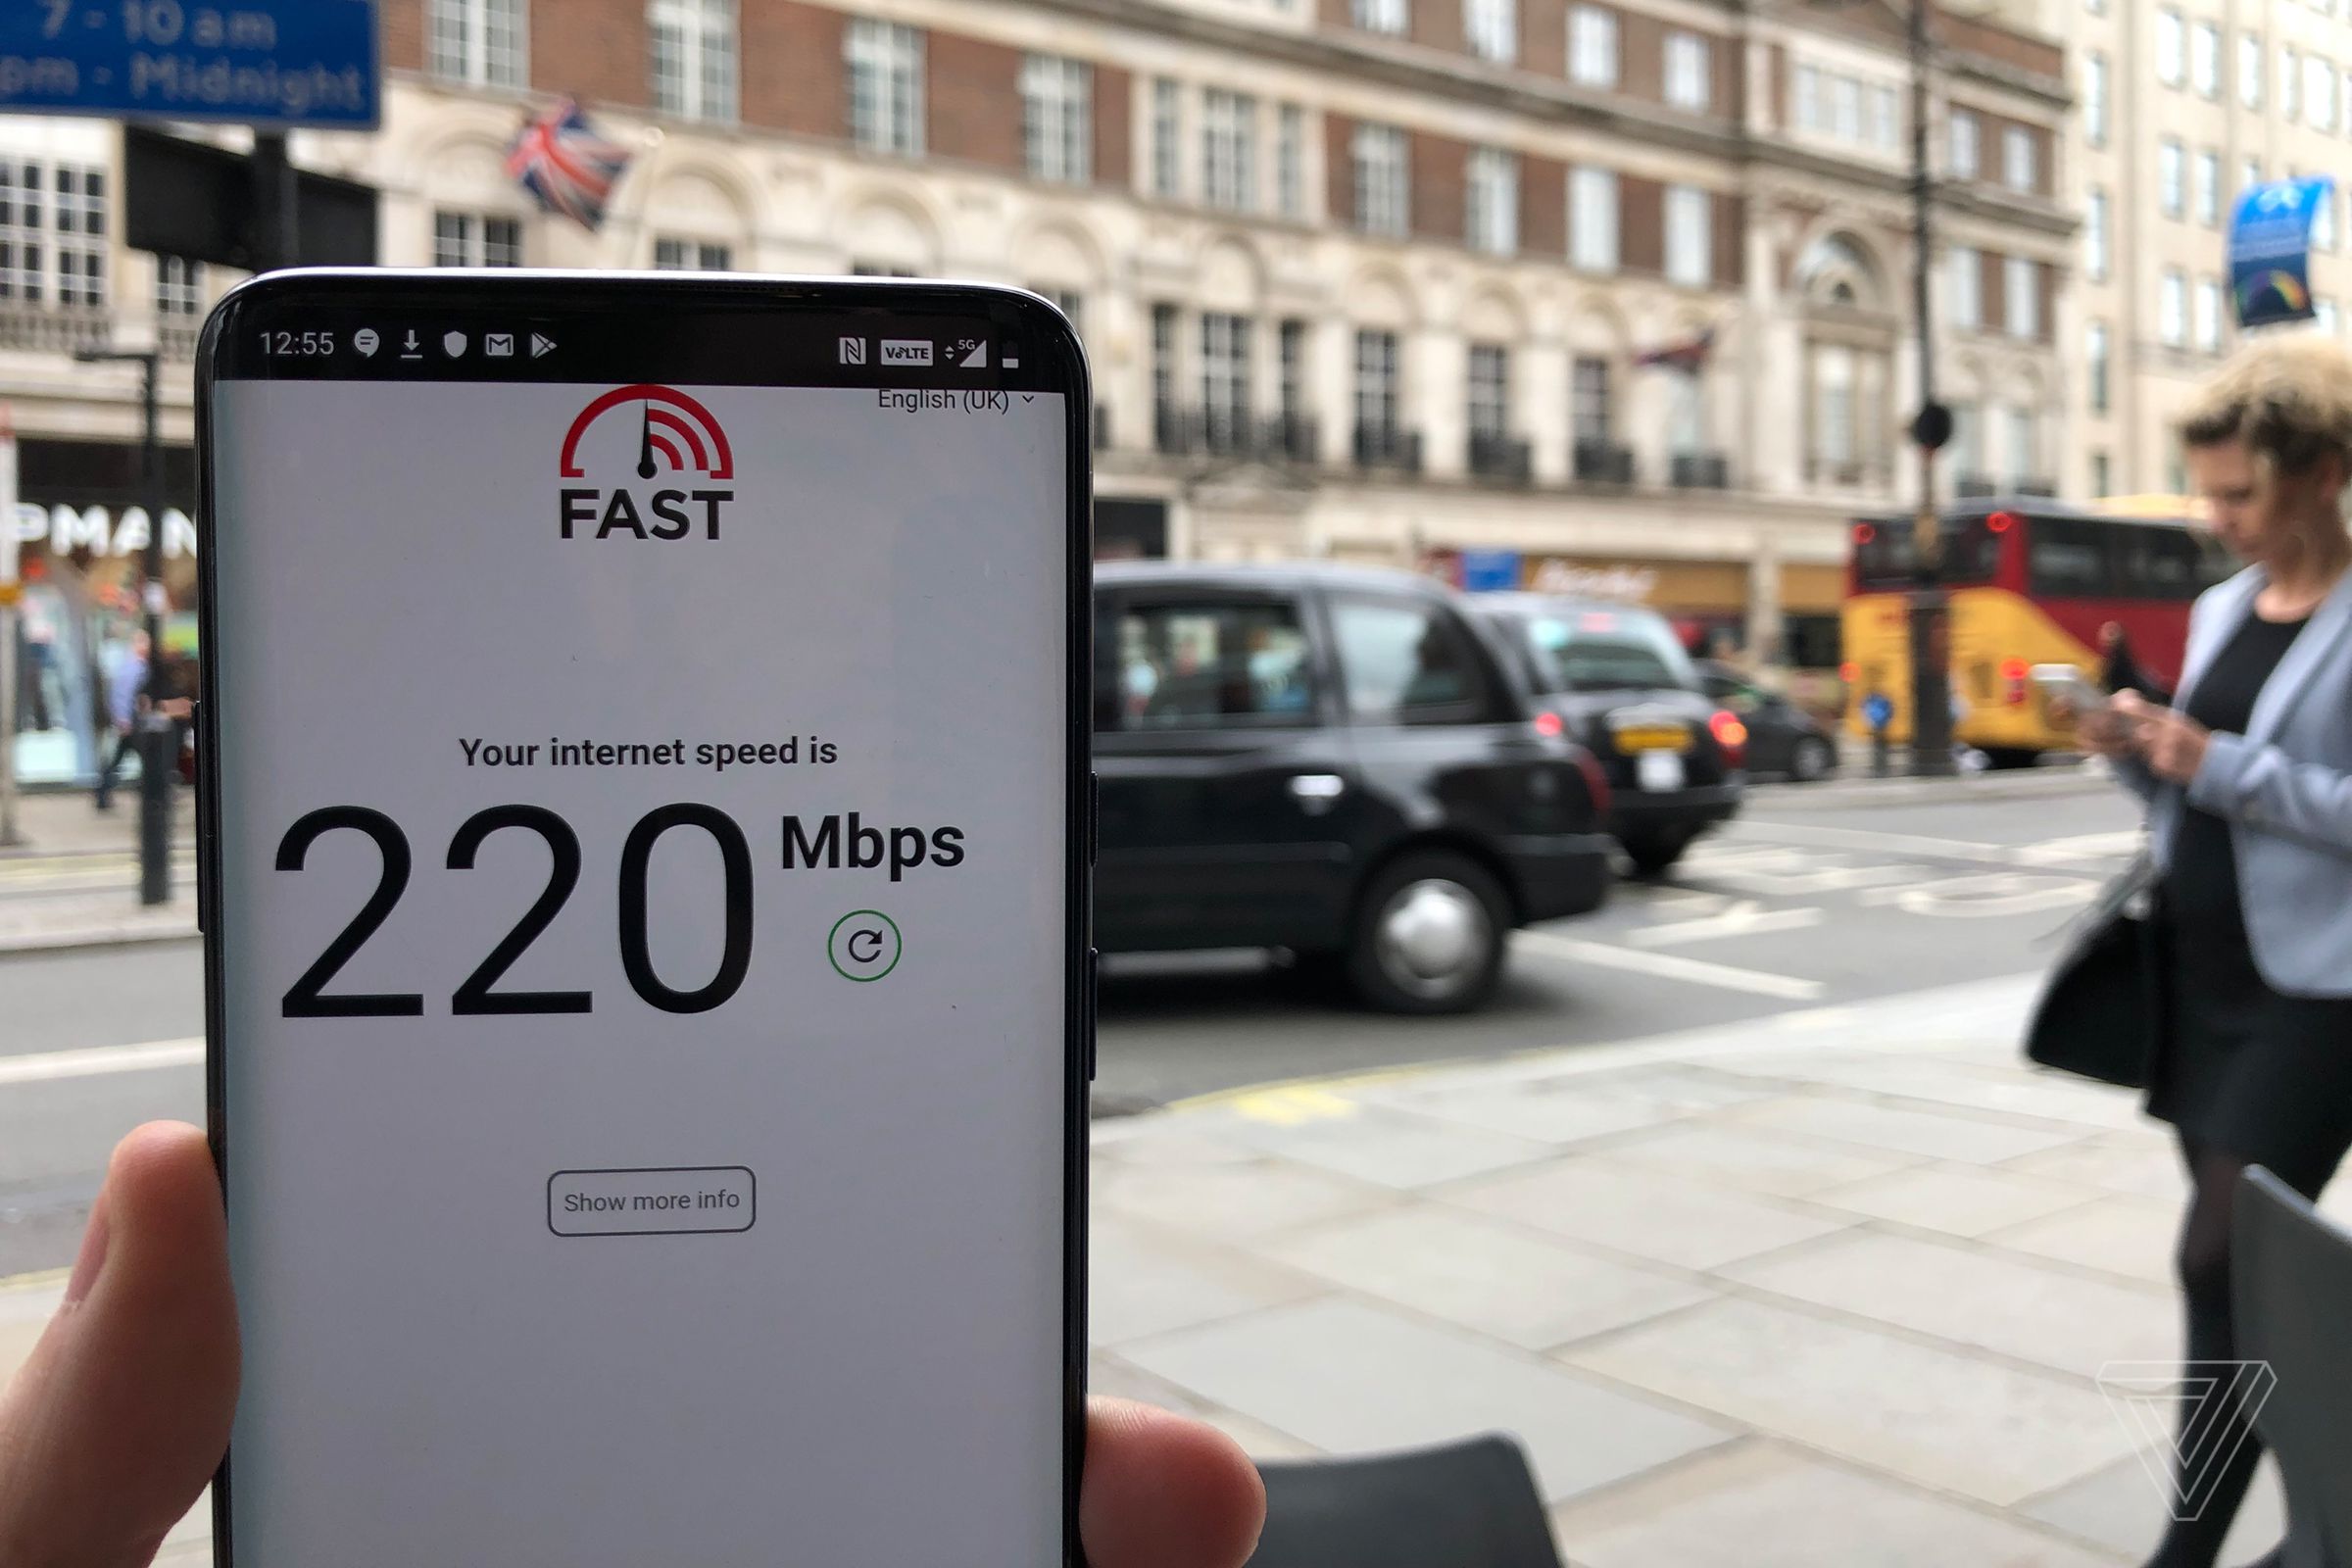 5G speeds in the UK.